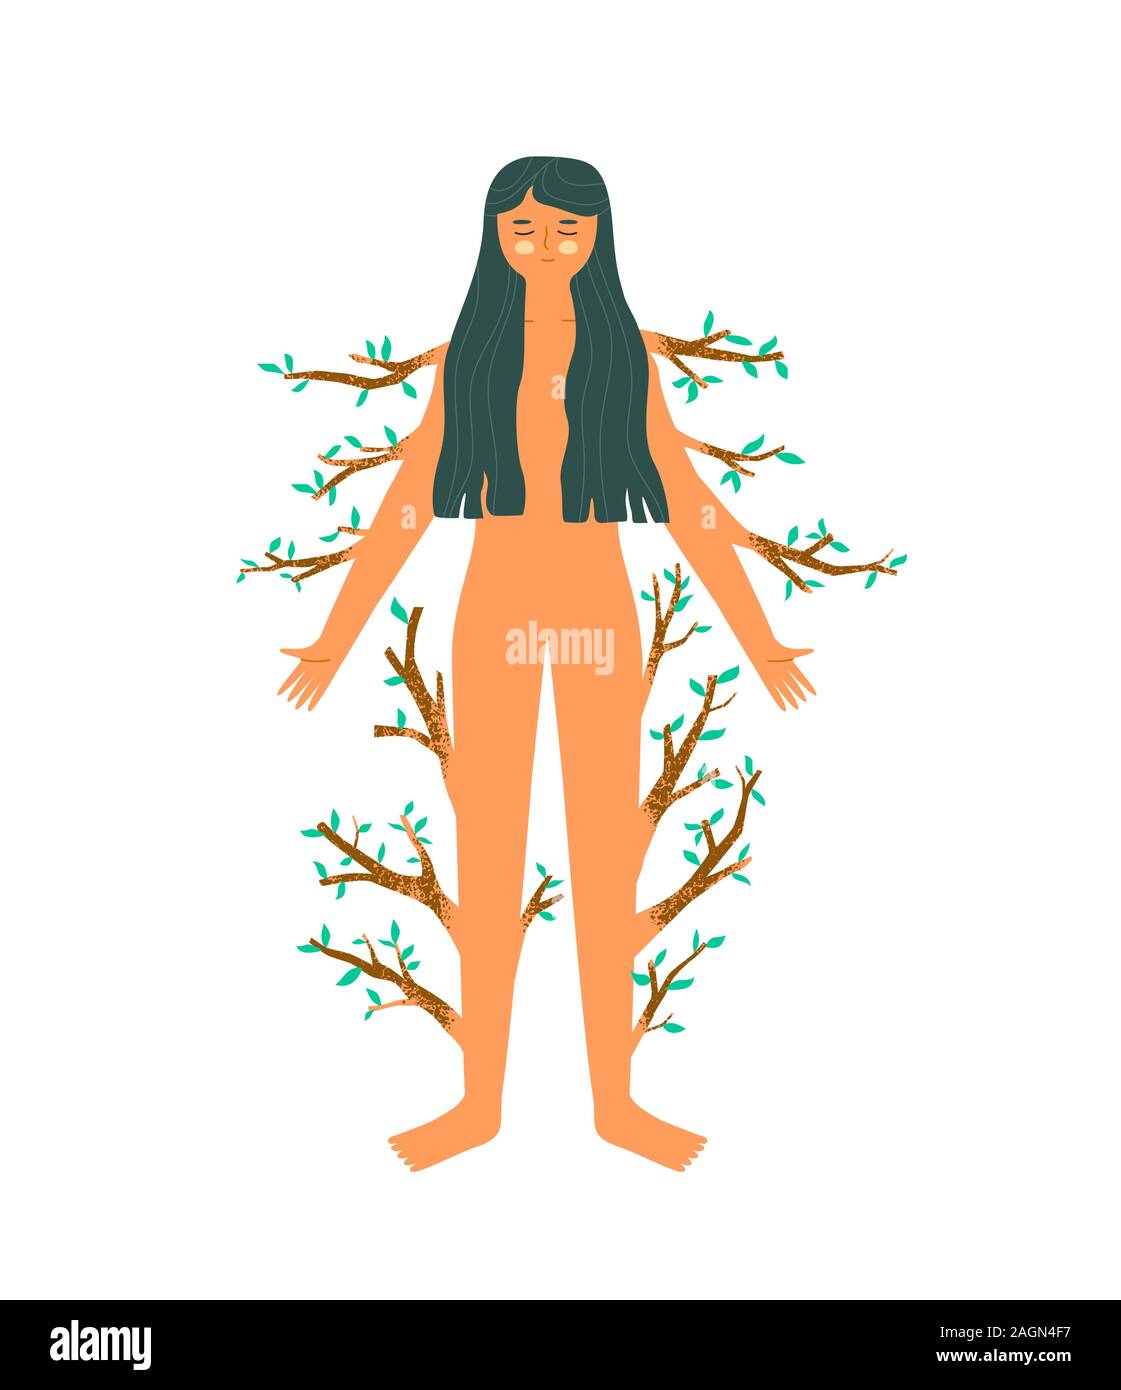 Glückliche Frau mit grünen Zweig der Baumstruktur auf isolierten weißen Hintergrund. Körper, Gesundheit oder umweltfreundliche Natur care Konzept in der Hand gezeichneten Cartoon Stil. Stock Vektor